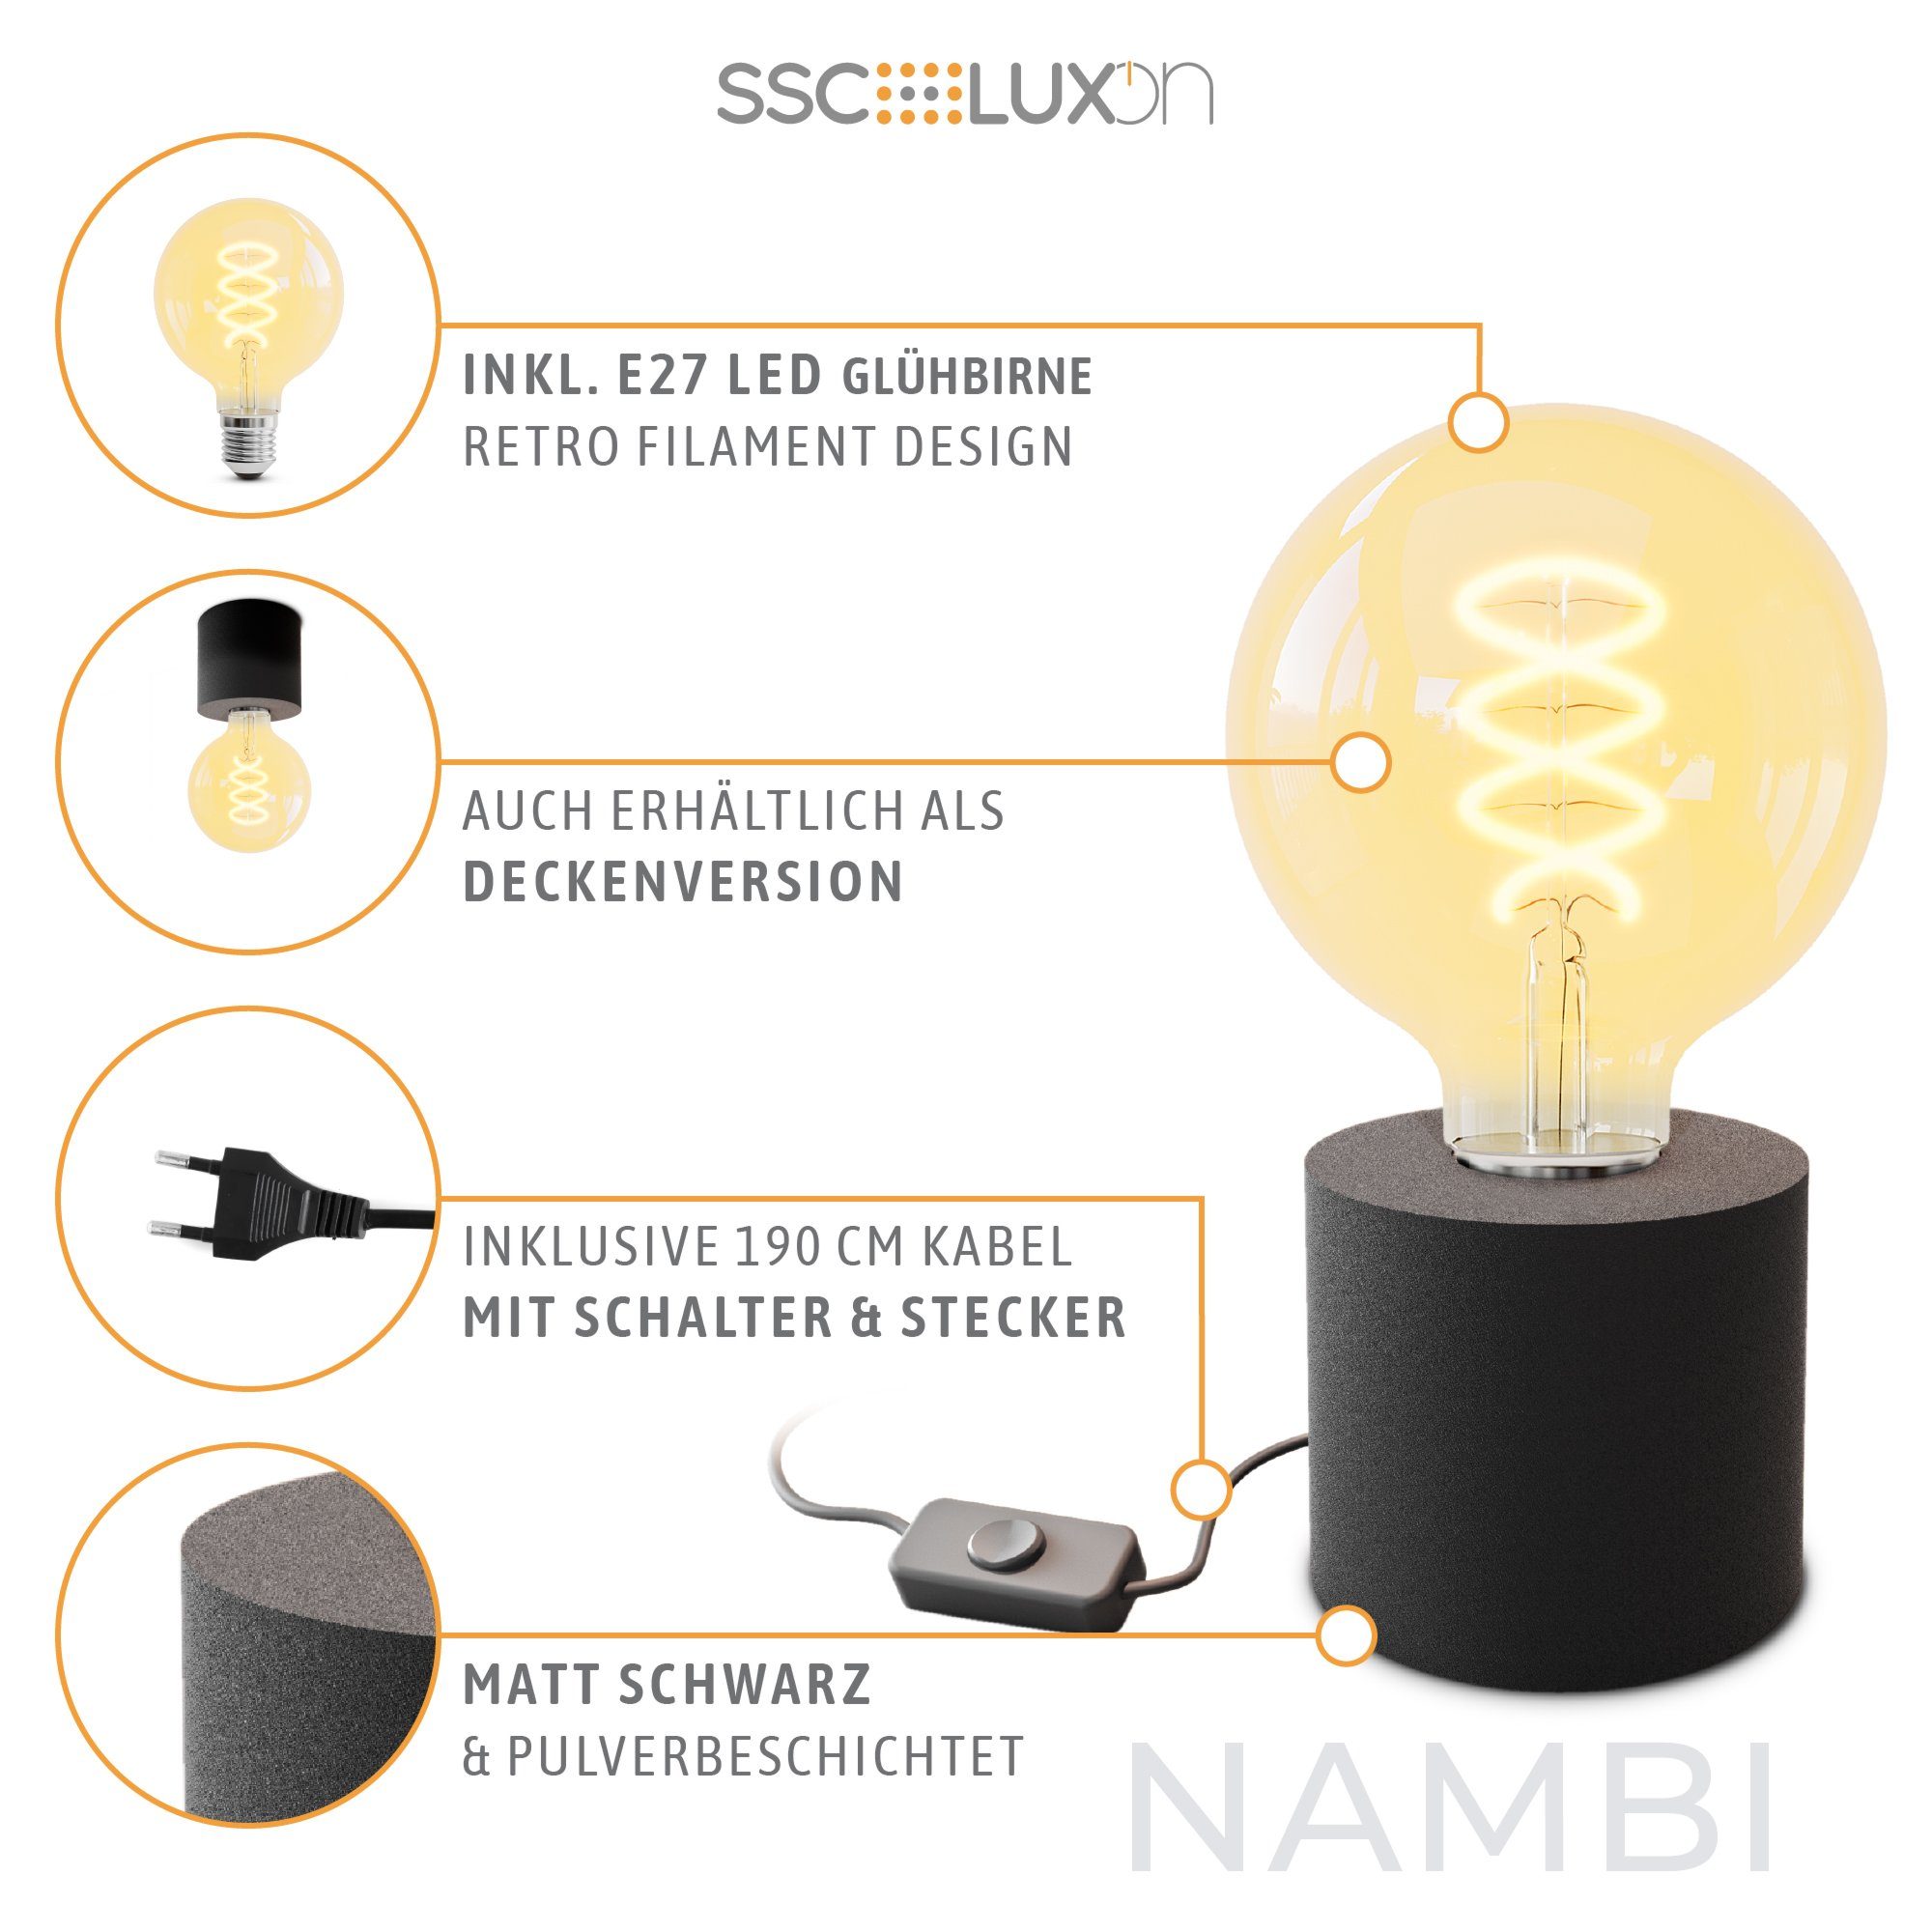 mit NAMBI Steckerkabel & Globe, Warmweiß Bilderleuchte LED mit Extra Tischlampe LED schwarz SSC-LUXon E27 Wand-